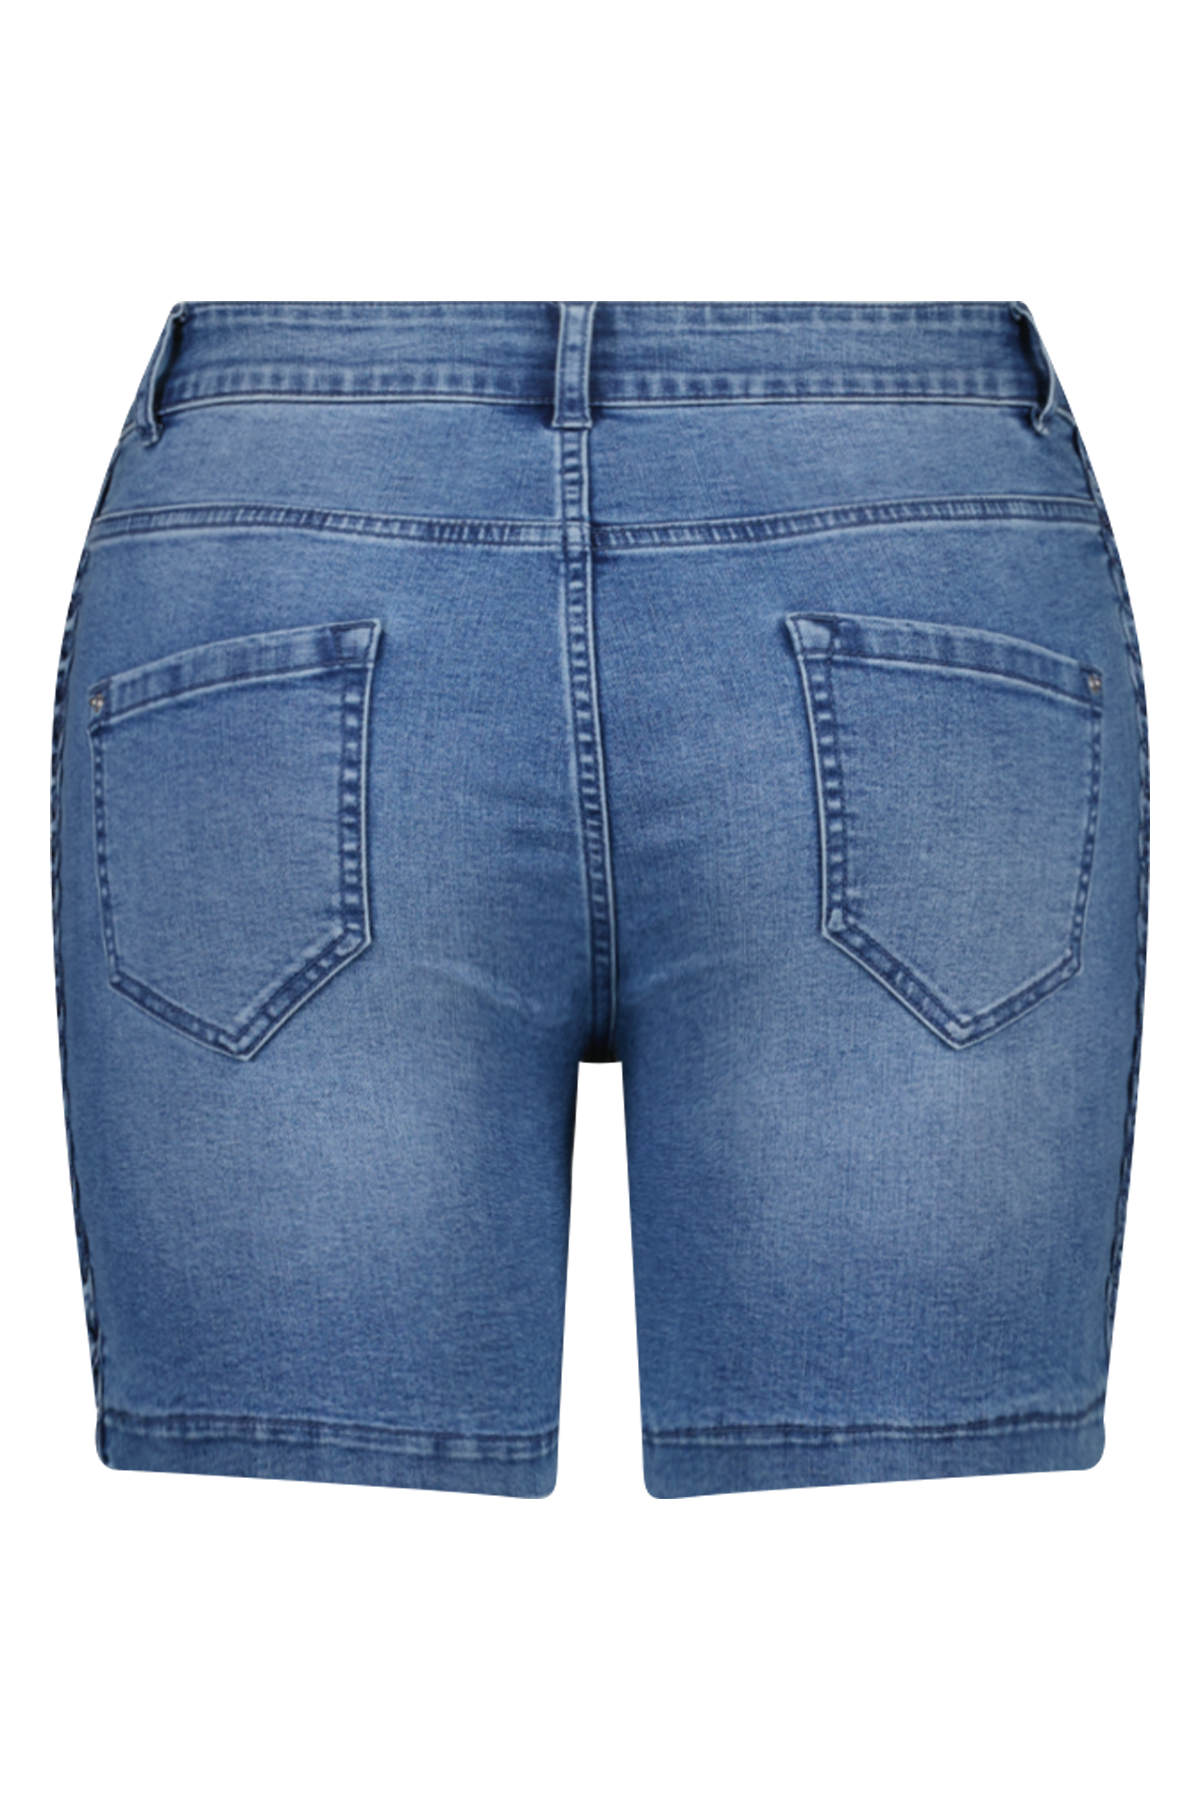 Jeans-Shorts mit geflochtener Verzierung  image number 2